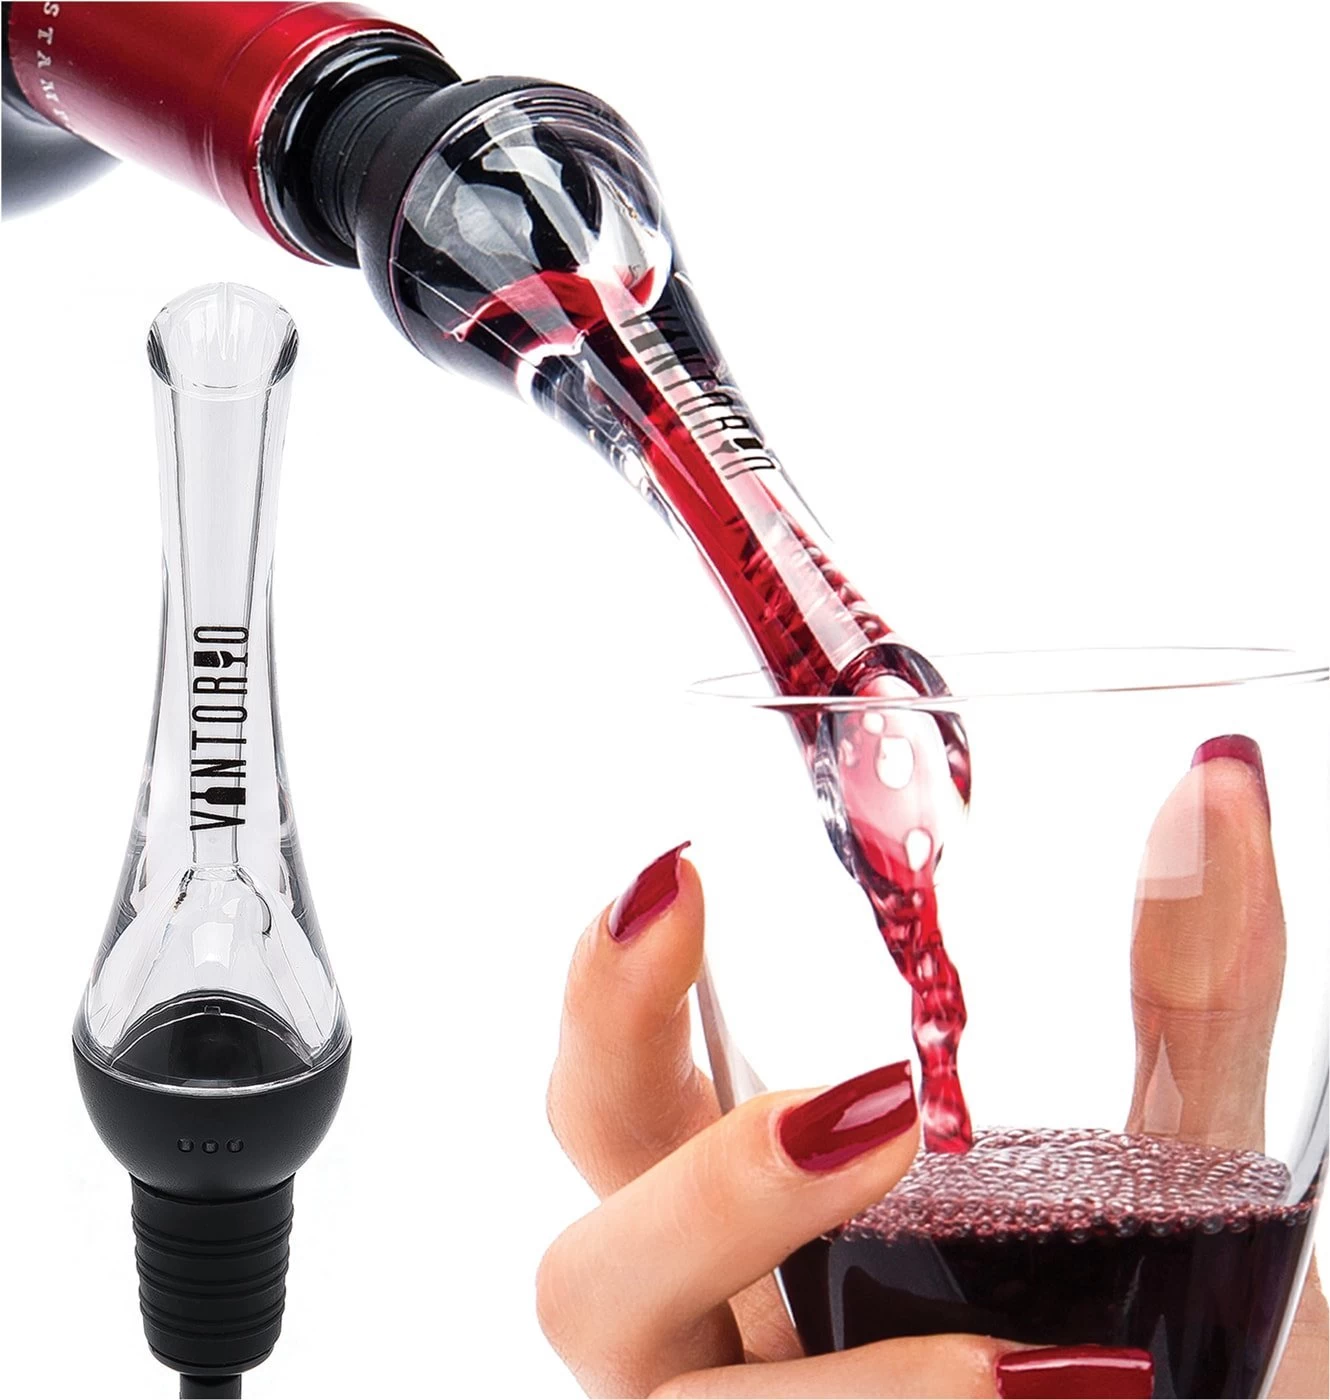 Wine Aerator Premium Aerating And Decanter Spout Black